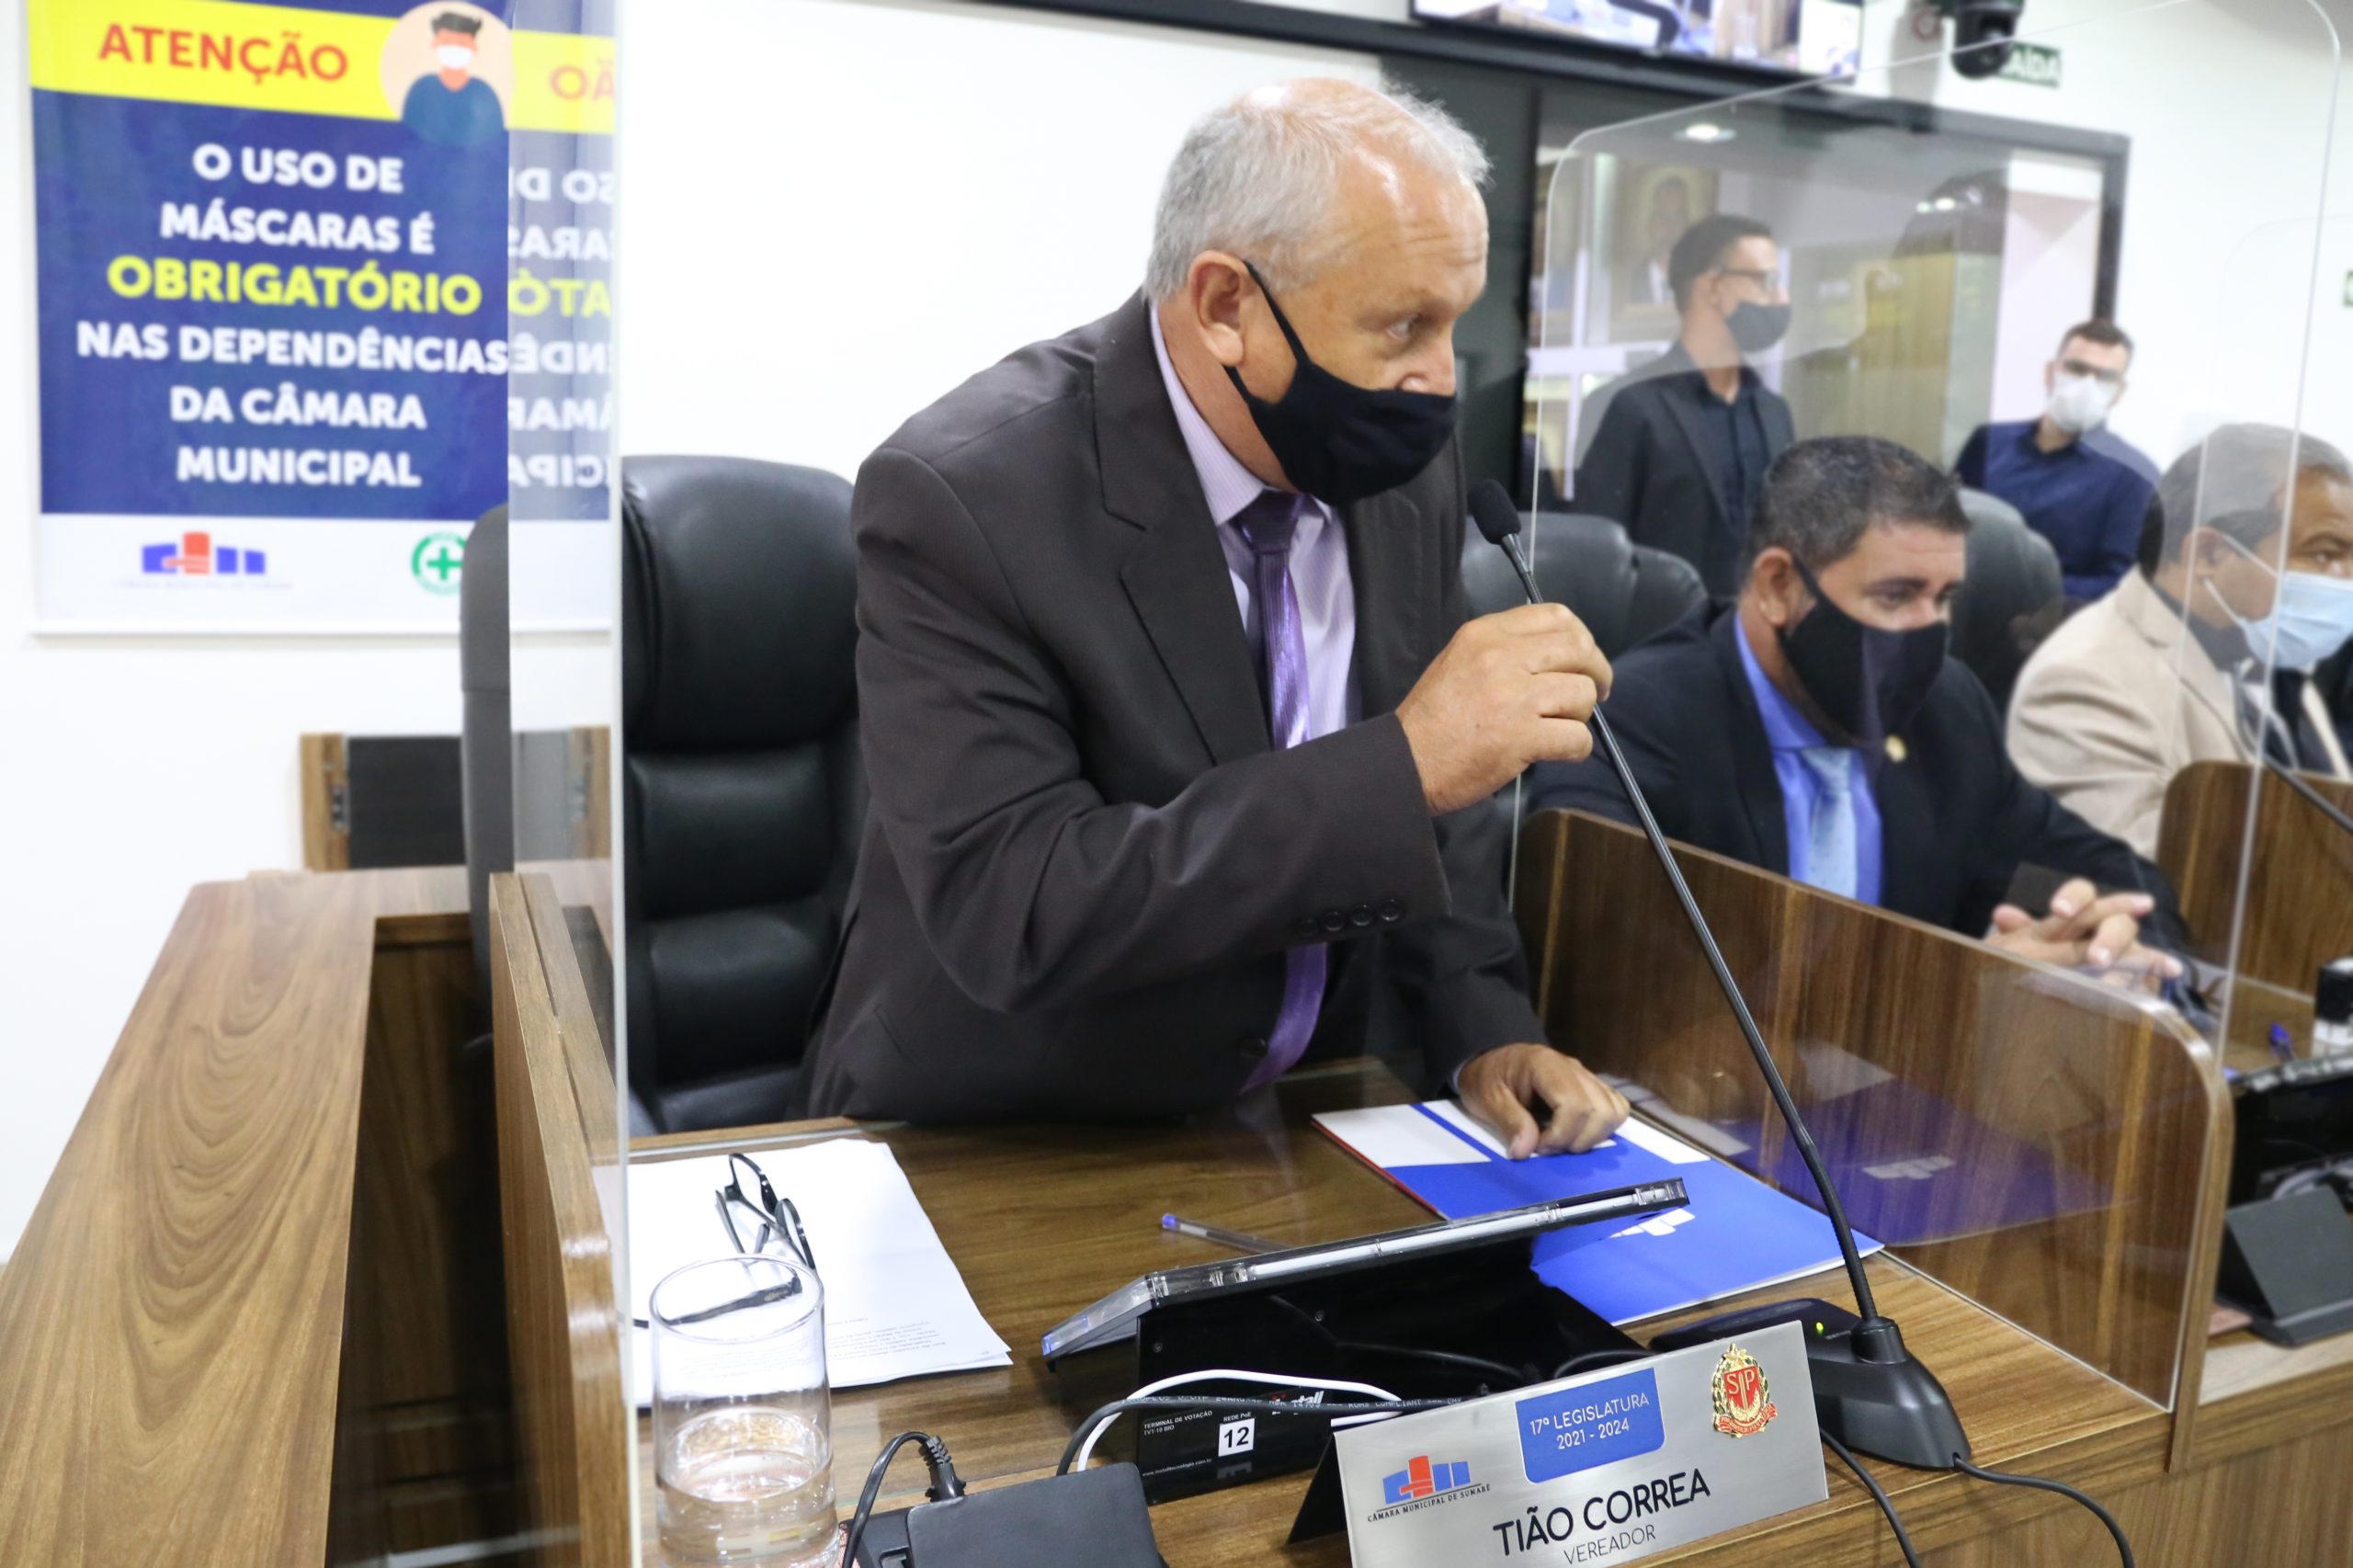 Agências bancárias de Sumaré deverão ter dispositivo de áudio para gerenciamento de filas de espera